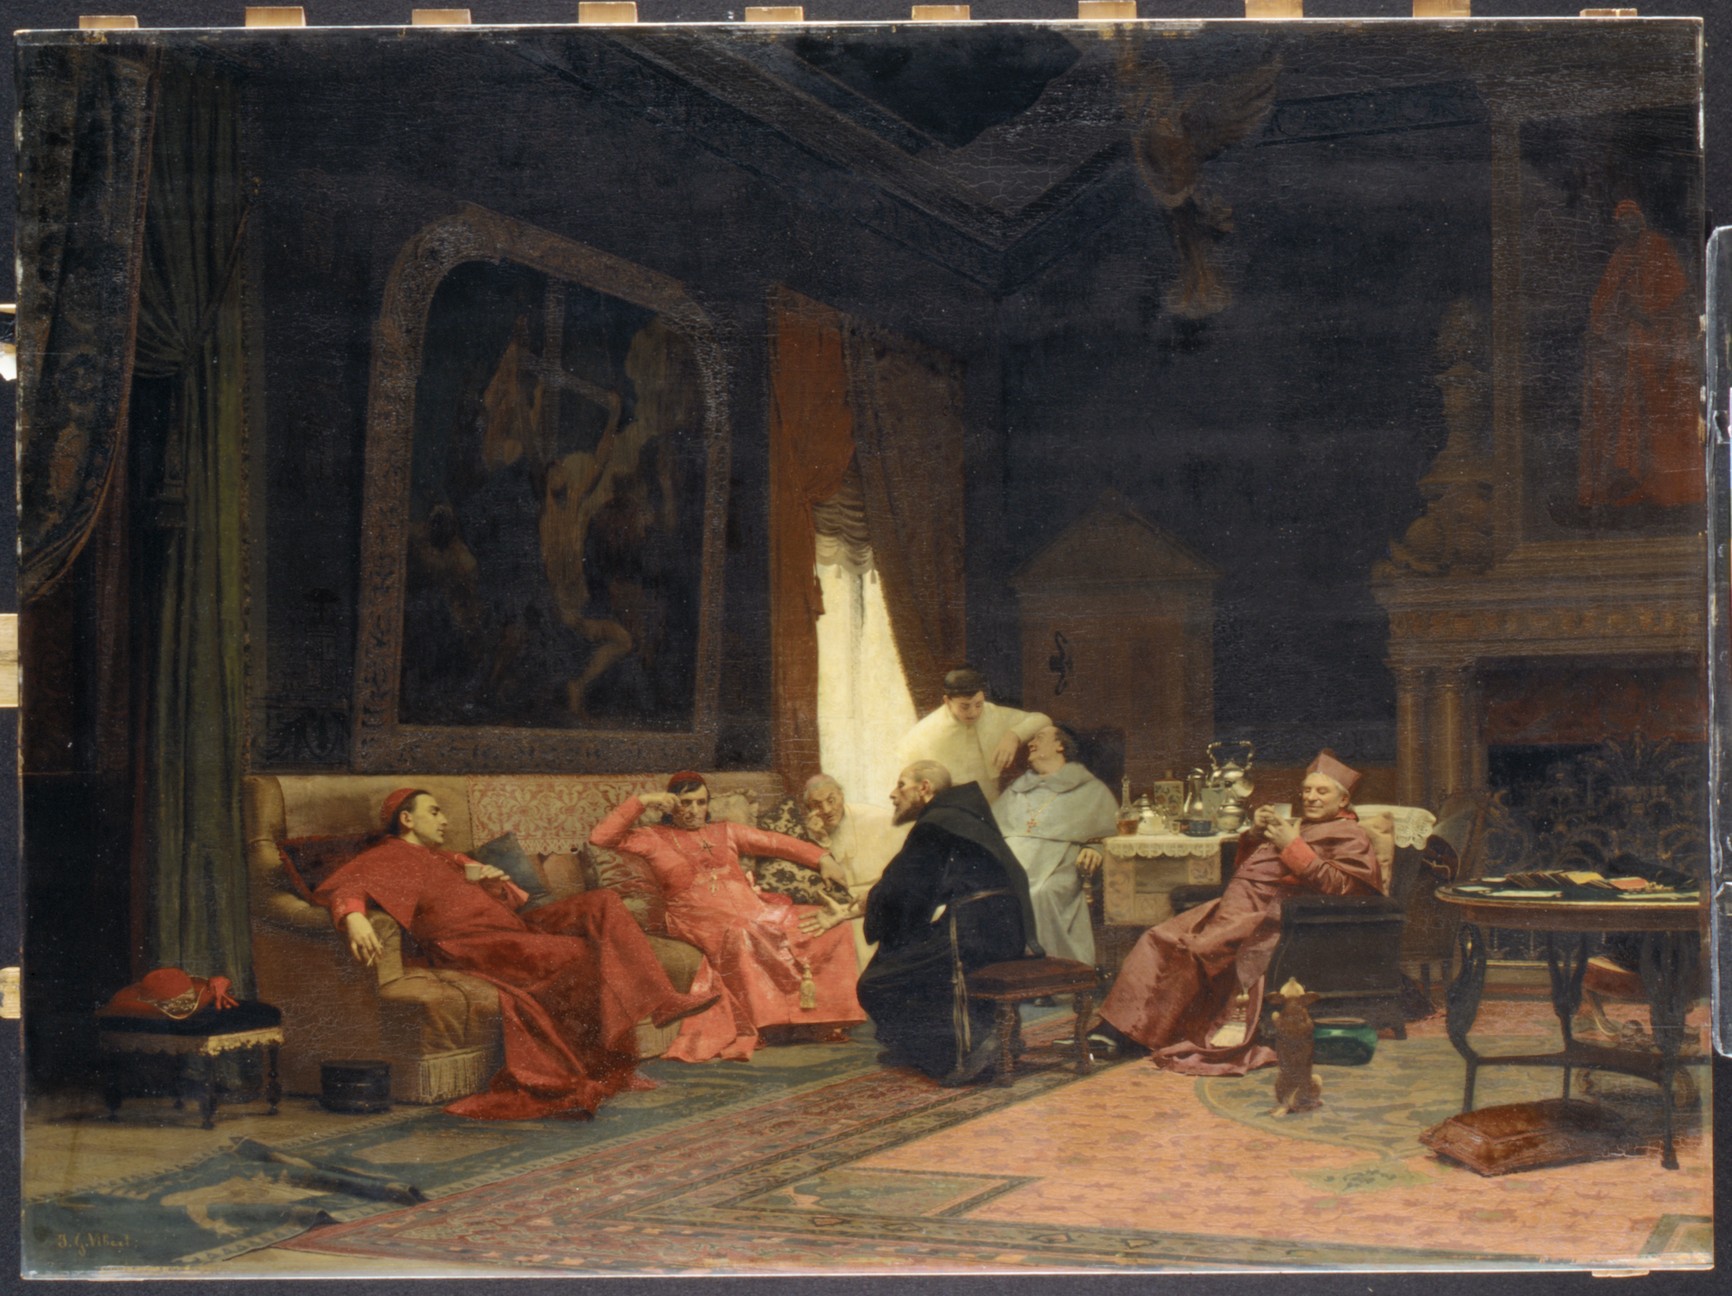 Les Aventures du missionaire  by Jehan Georges Vibert - 1883 - - Metropolitan Museum of Art